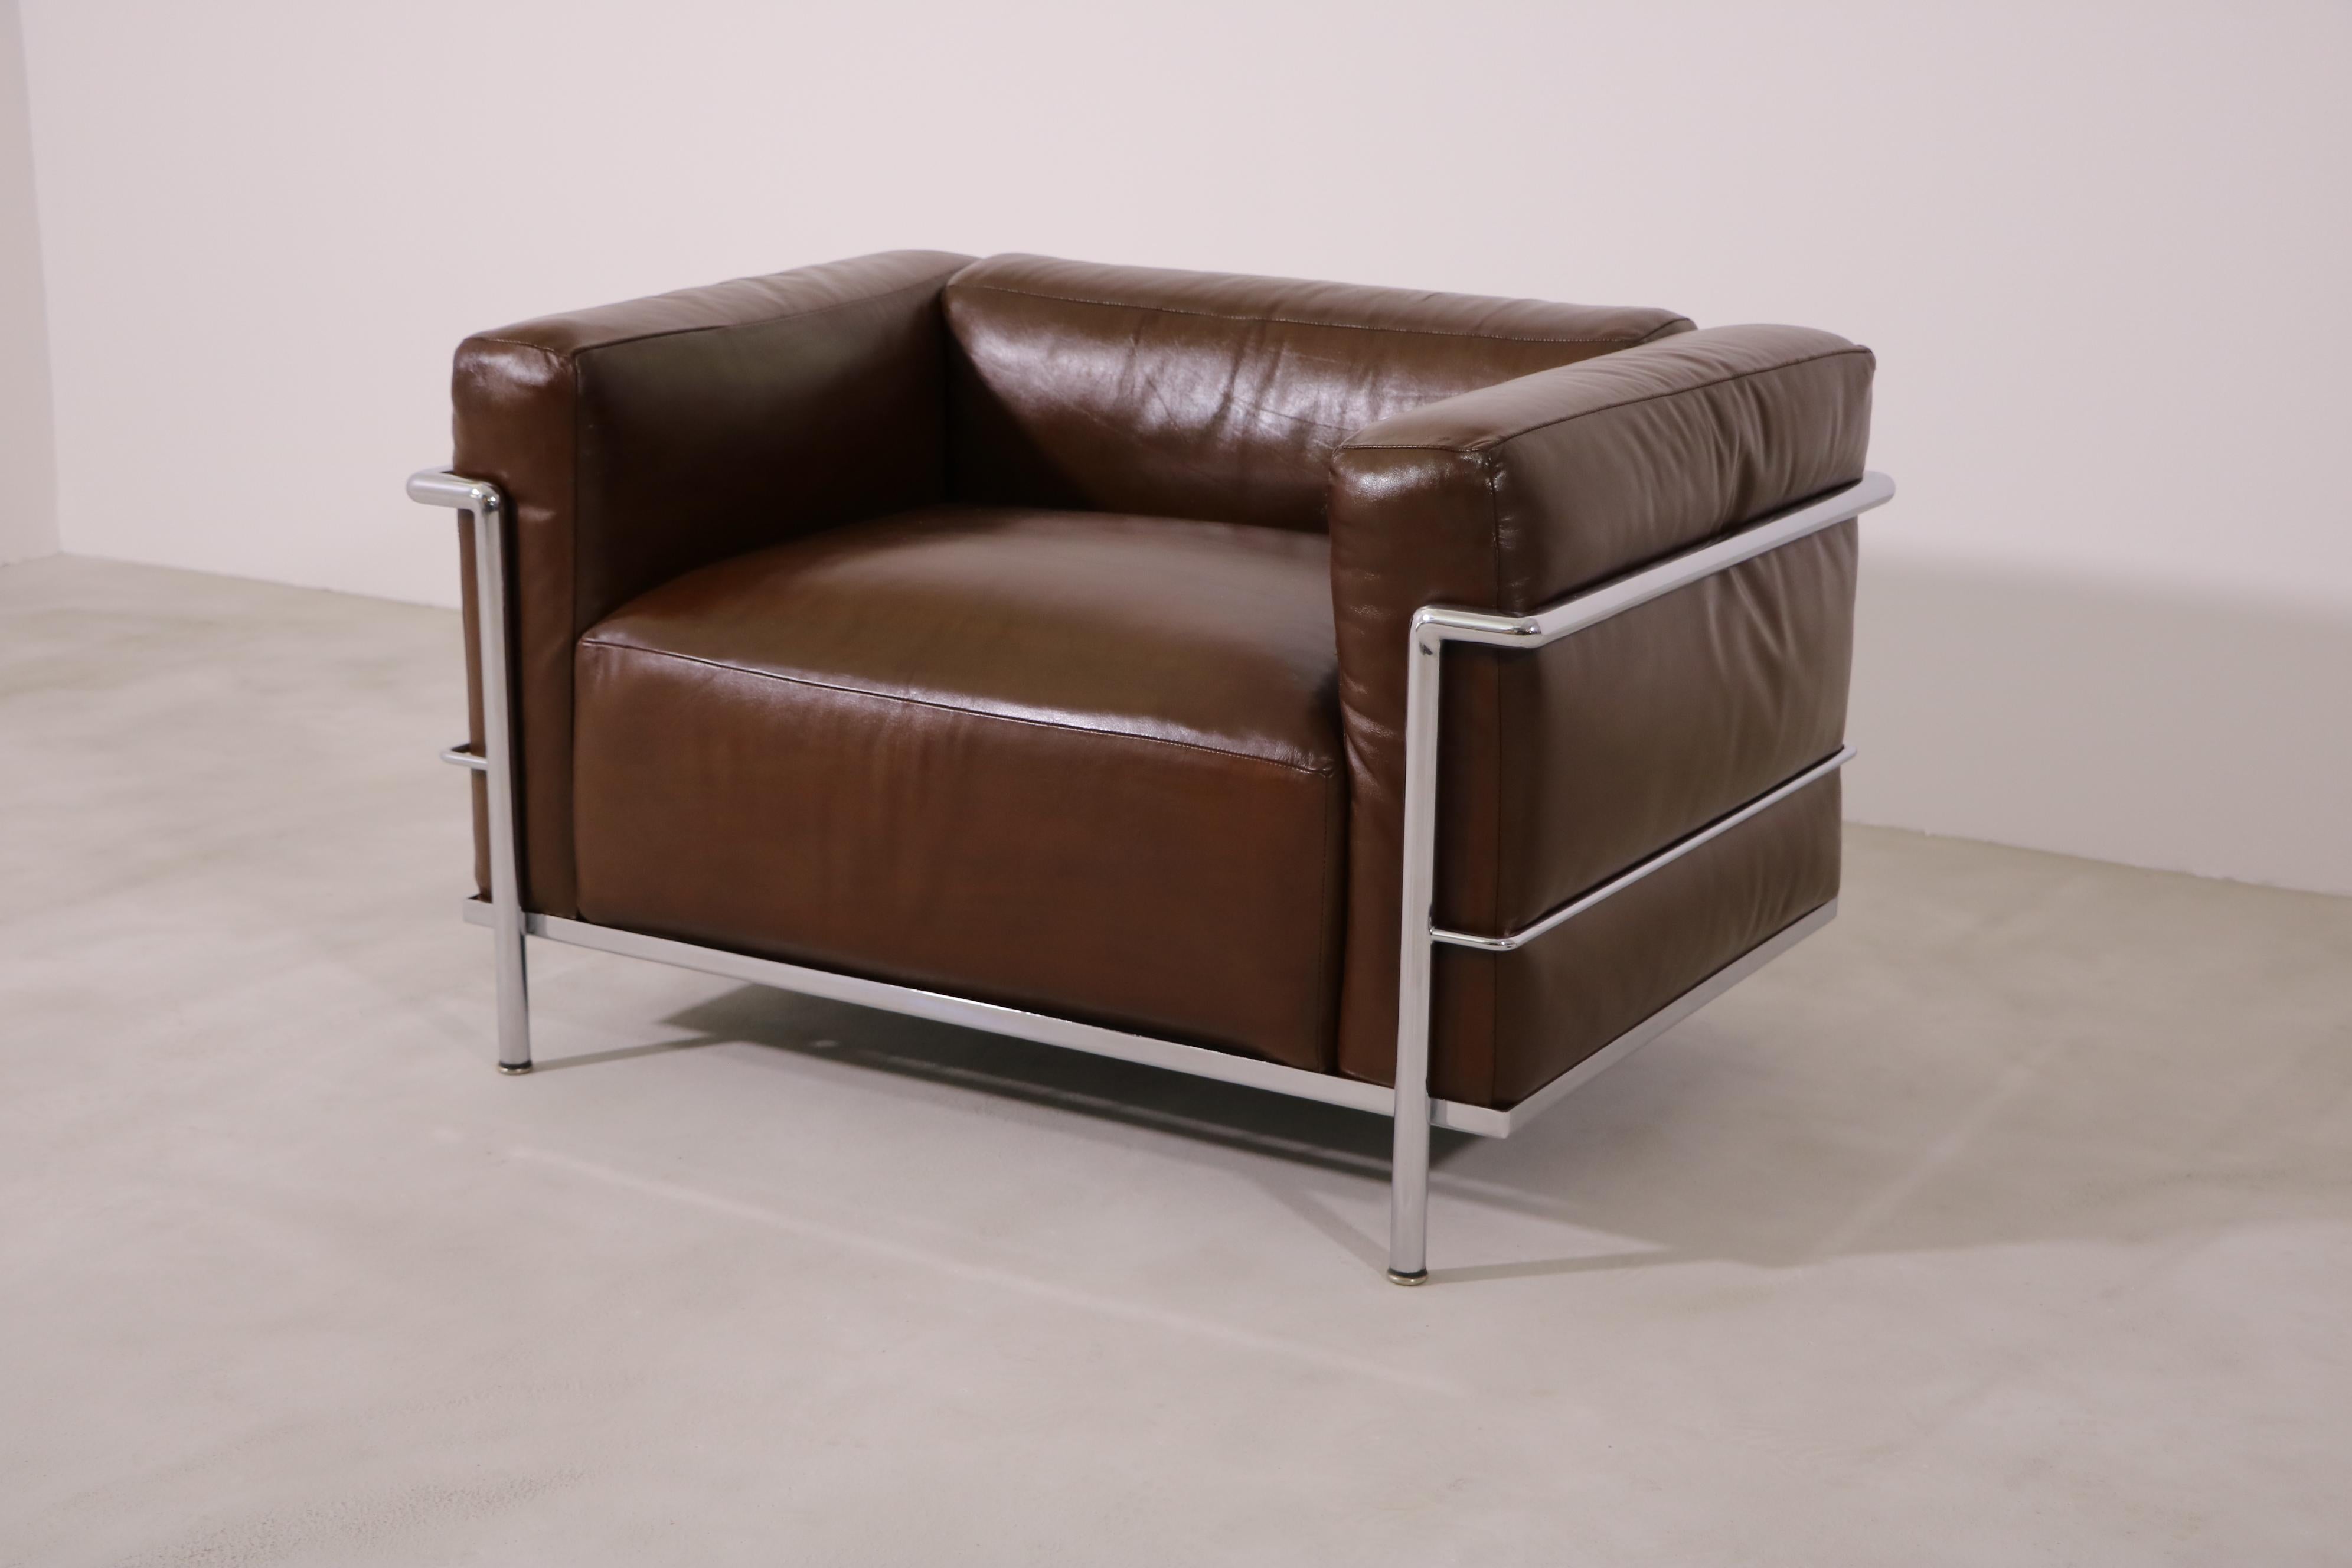 Le fauteuil est une production précoce de 1970 en cuir marron avec une belle patine. 
Petit numéro de série-1068, bracelets en caoutchouc et ancien logo Cassina.
Le prix est par chaise.